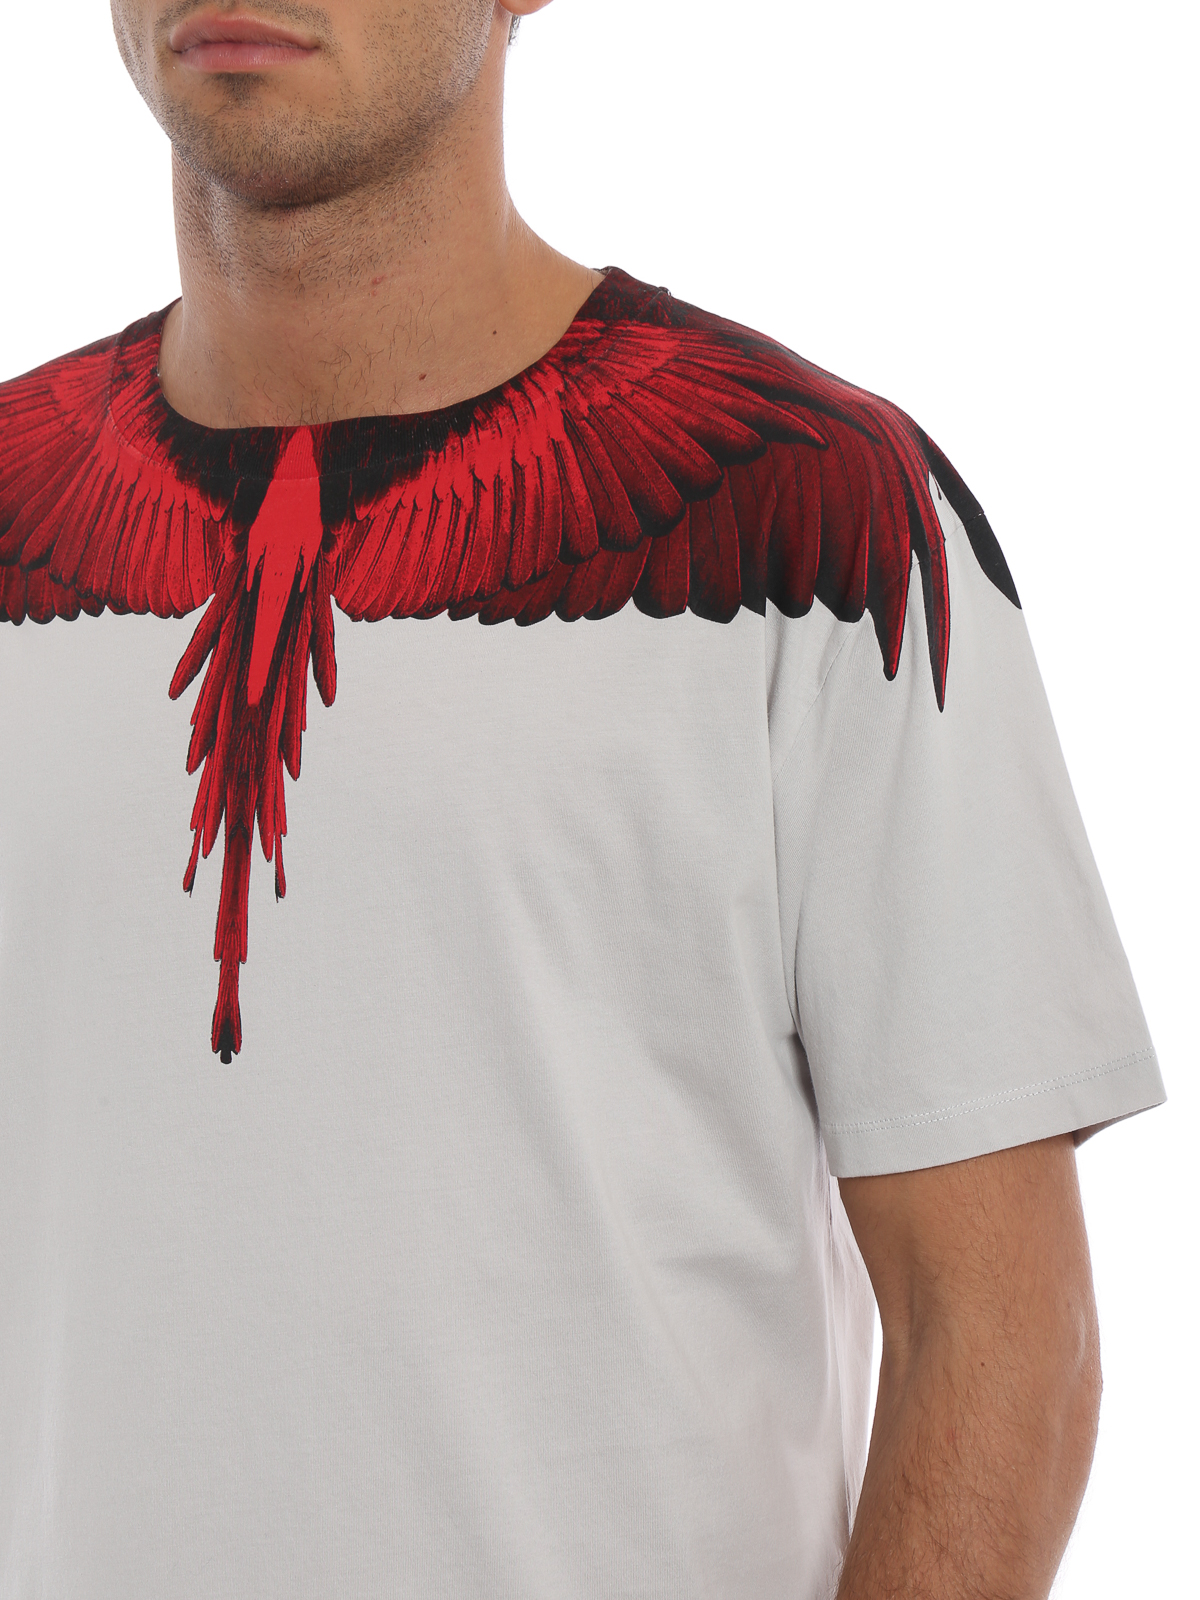 T-shirts Marcelo Burlon - Red Wings grey cotton T-shirt - CMAA018E180010010620